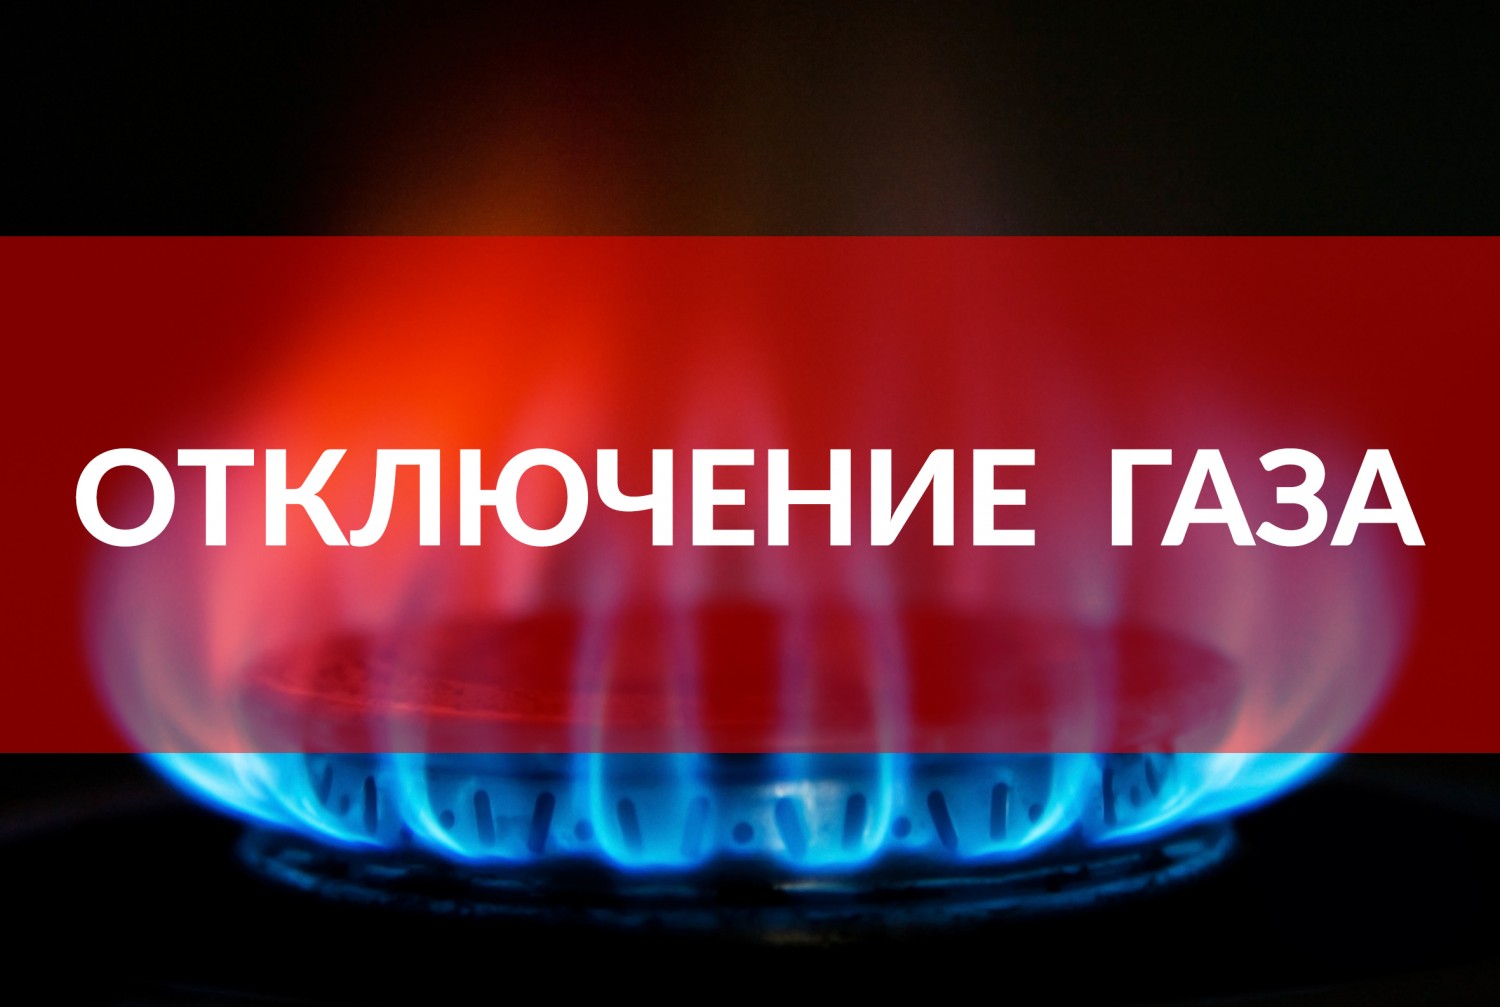 25 августа в Рыбном отключат газ. Список адресов